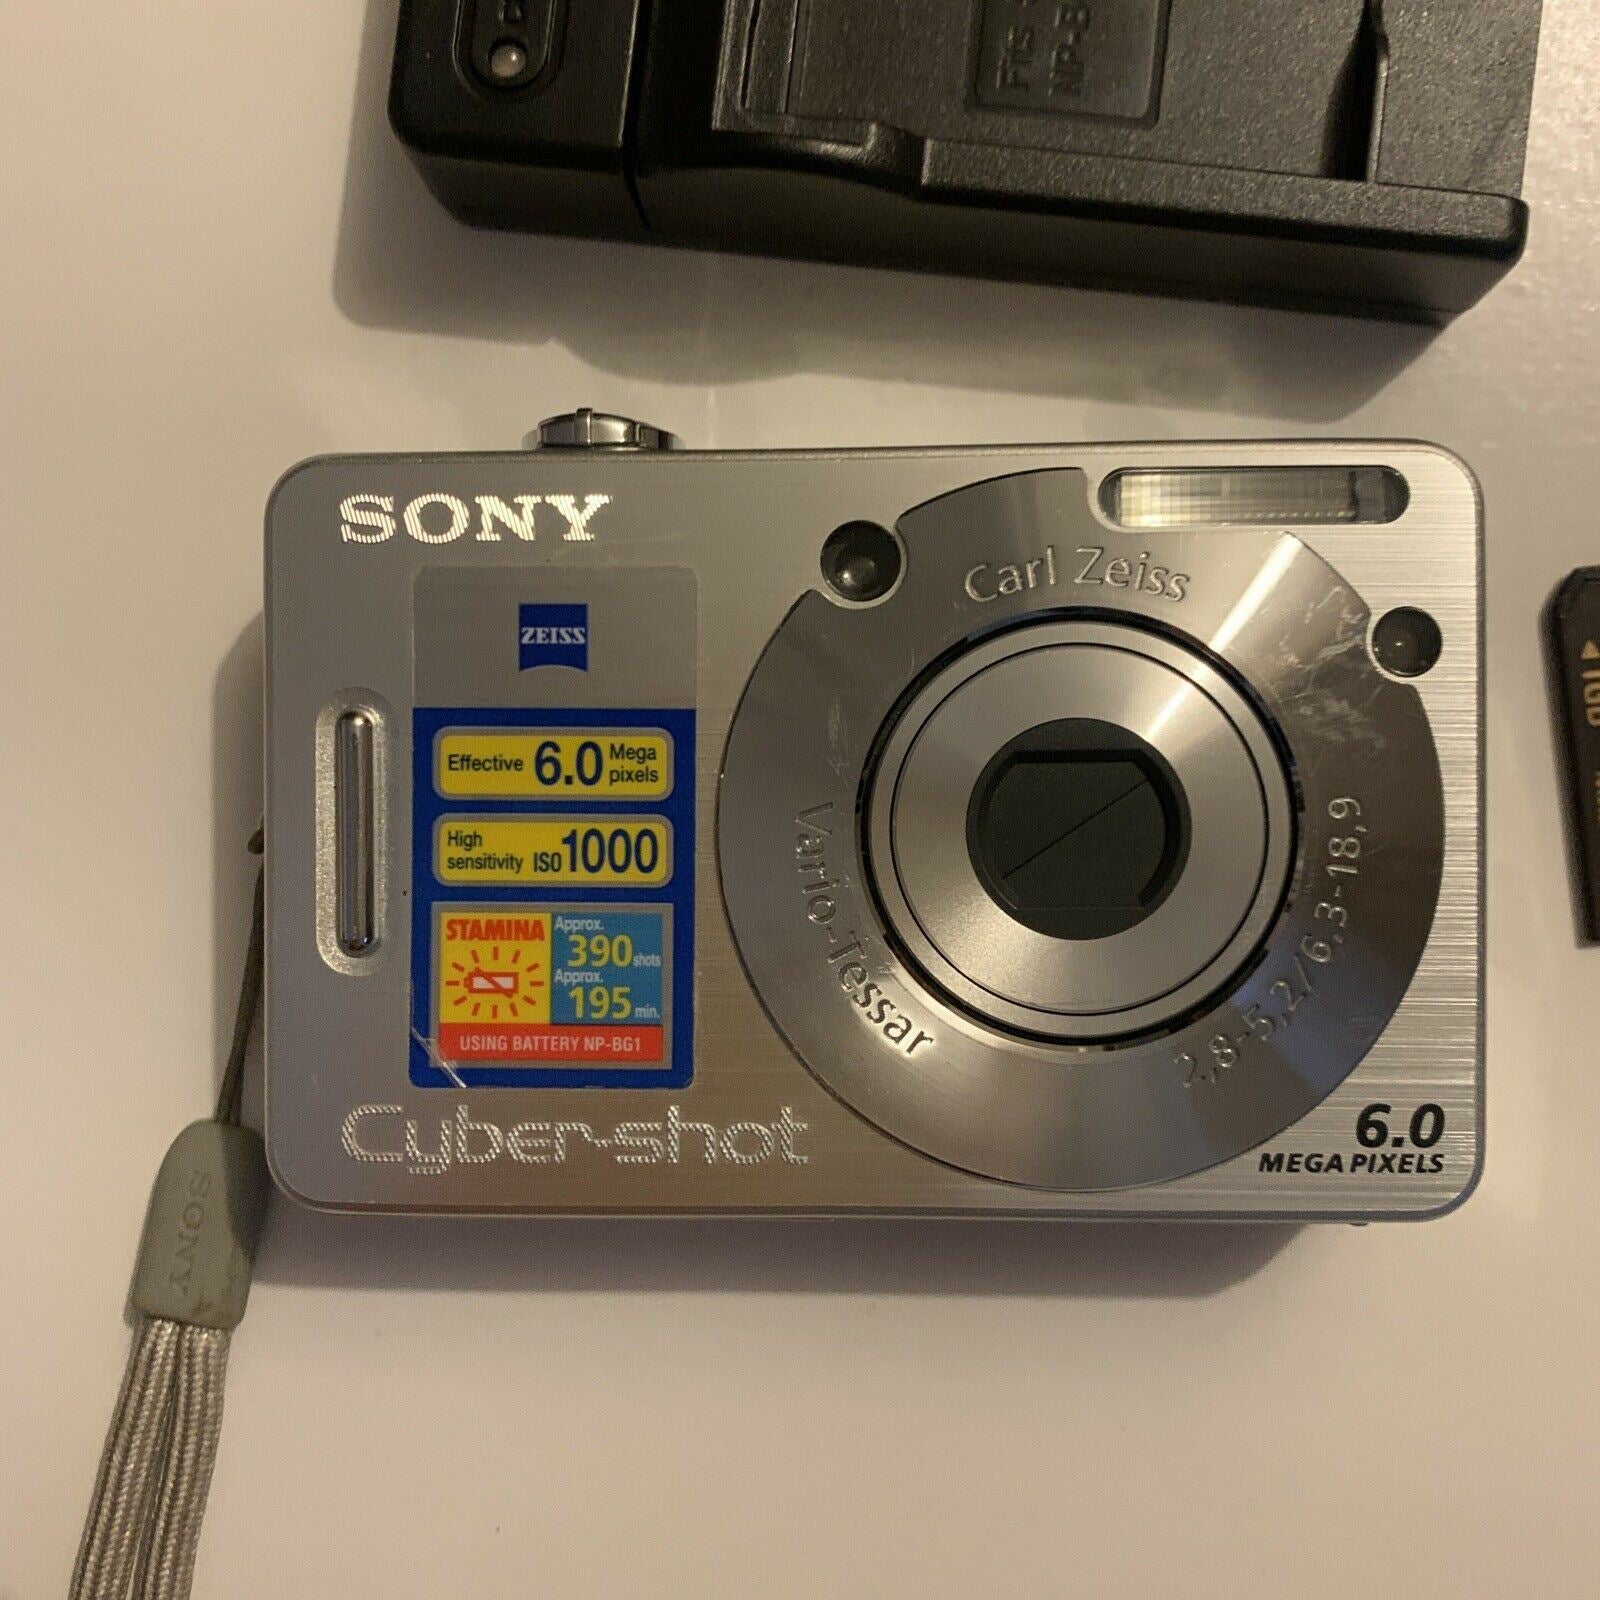 Sony Cyber-shot DSC-W50 6.0MP Digital Camera - Silver for sale online